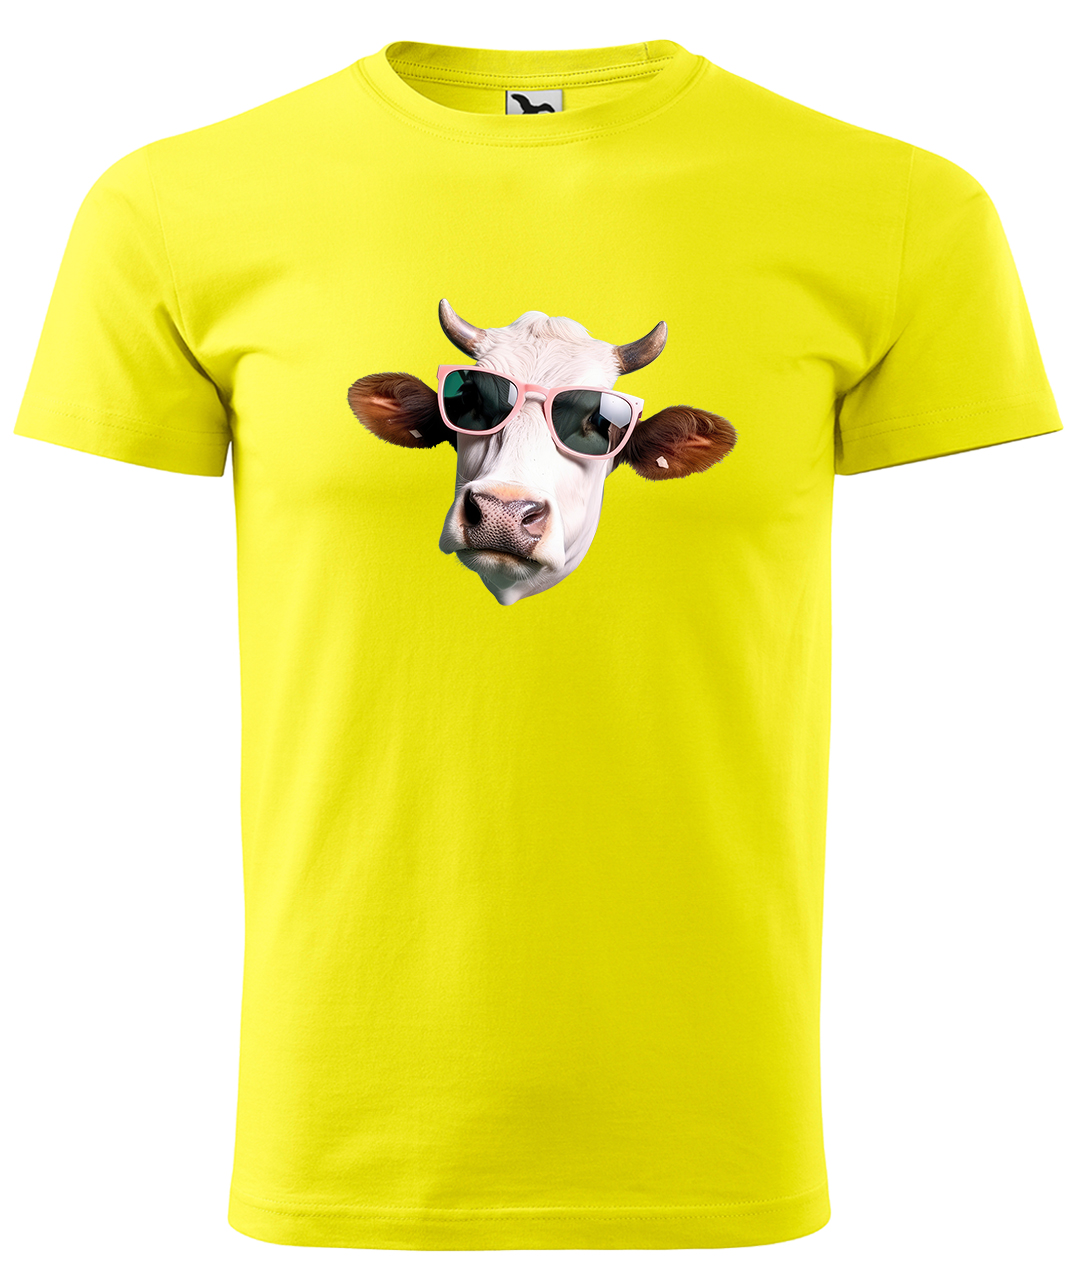 Dětské tričko s krávou - Kráva v brýlích Velikost: 8 let / 134 cm, Barva: Žlutá (04), Délka rukávu: Krátký rukáv